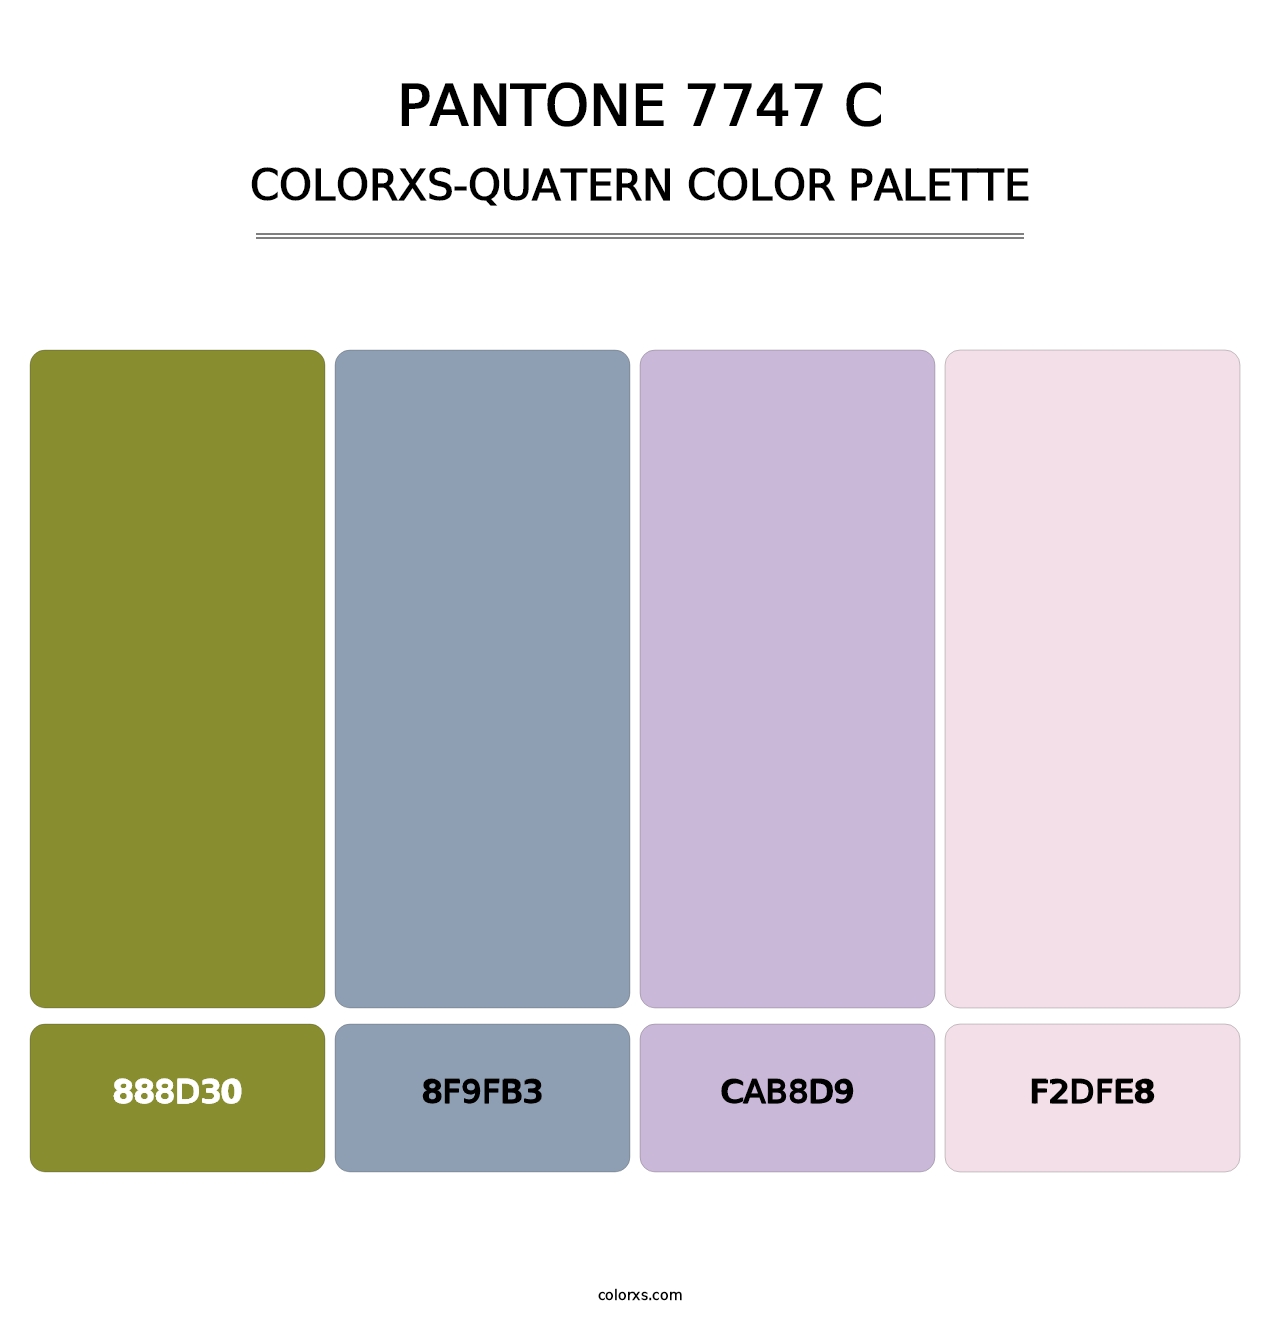 PANTONE 7747 C - Colorxs Quatern Palette